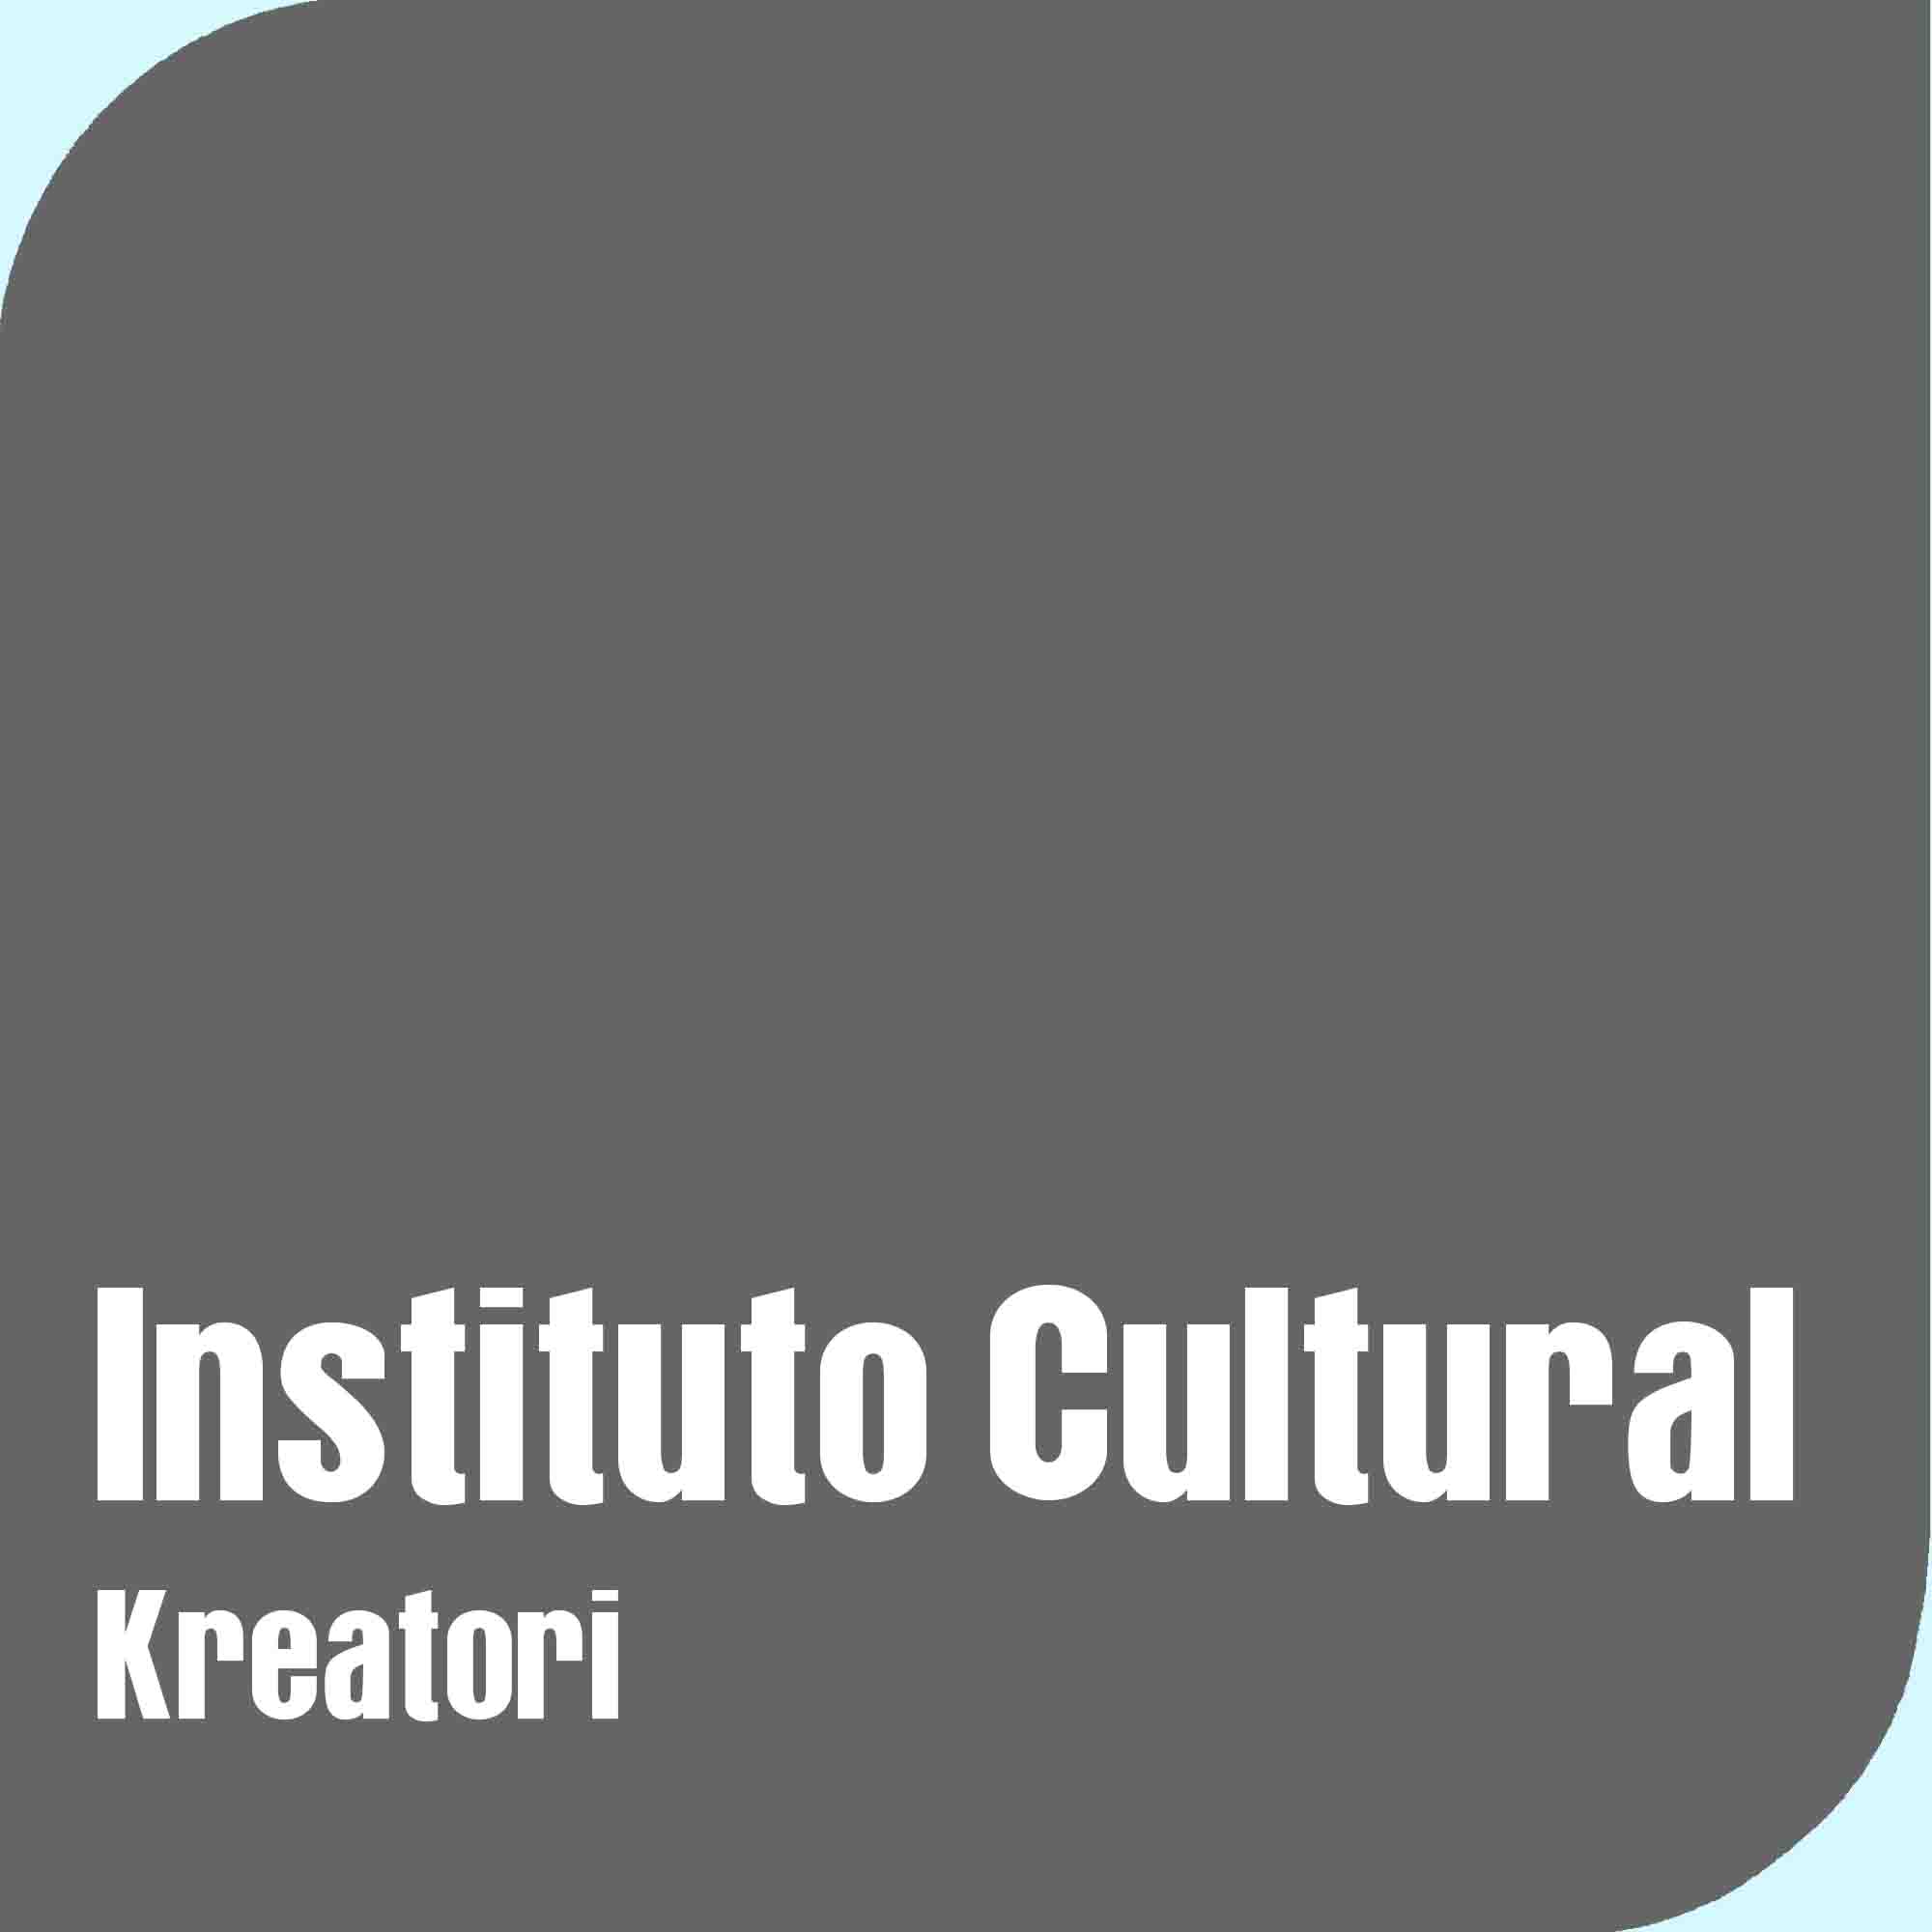 Instituto Cultural Kreatori